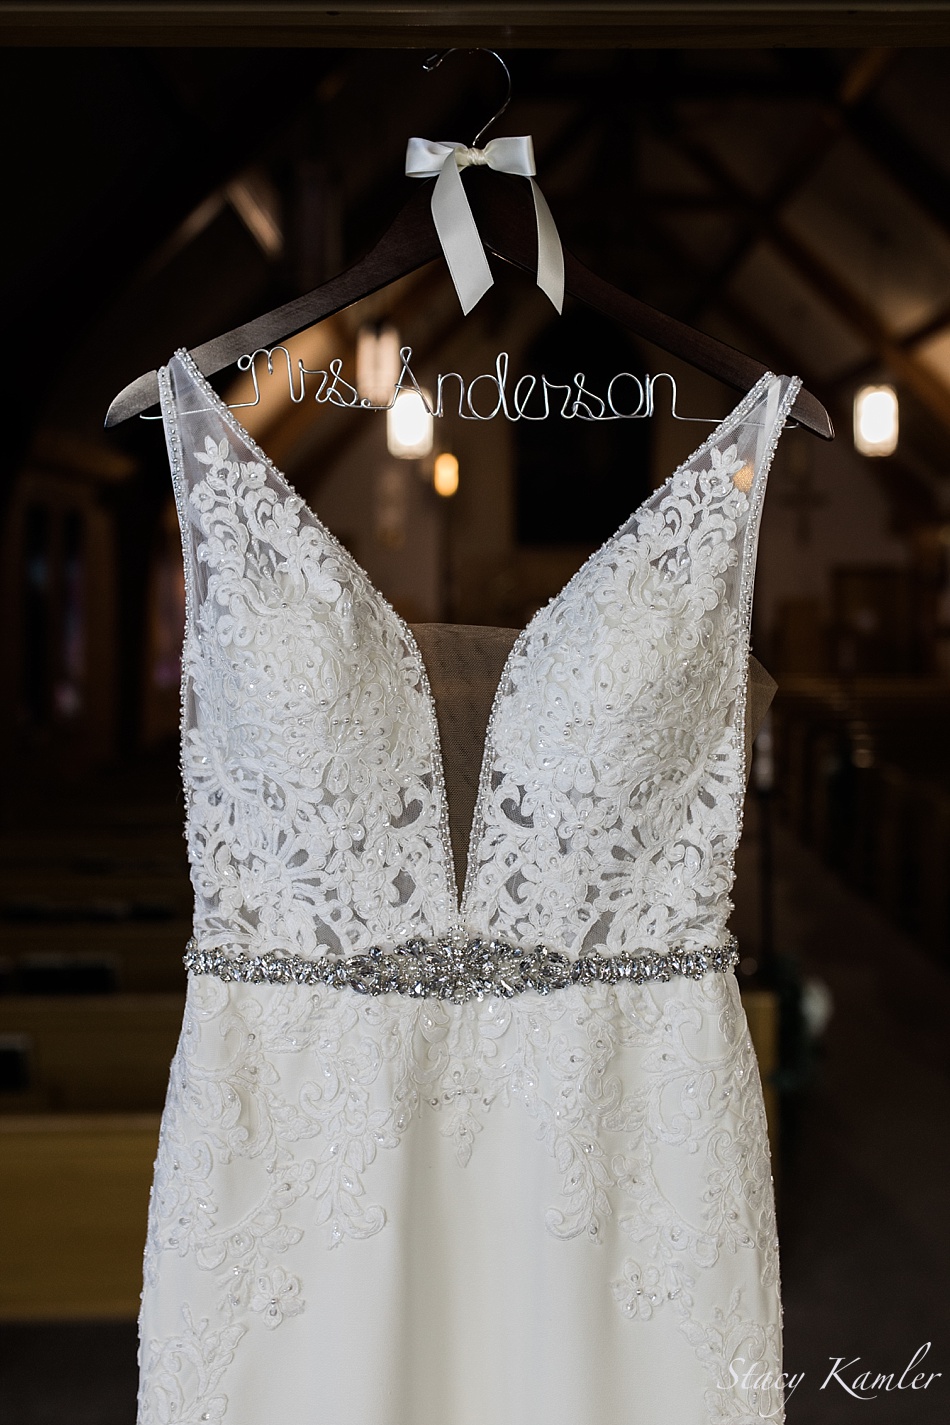 Wedding Dress from Hello Beautiful Bridal and Formal Wear, Kearney, NE